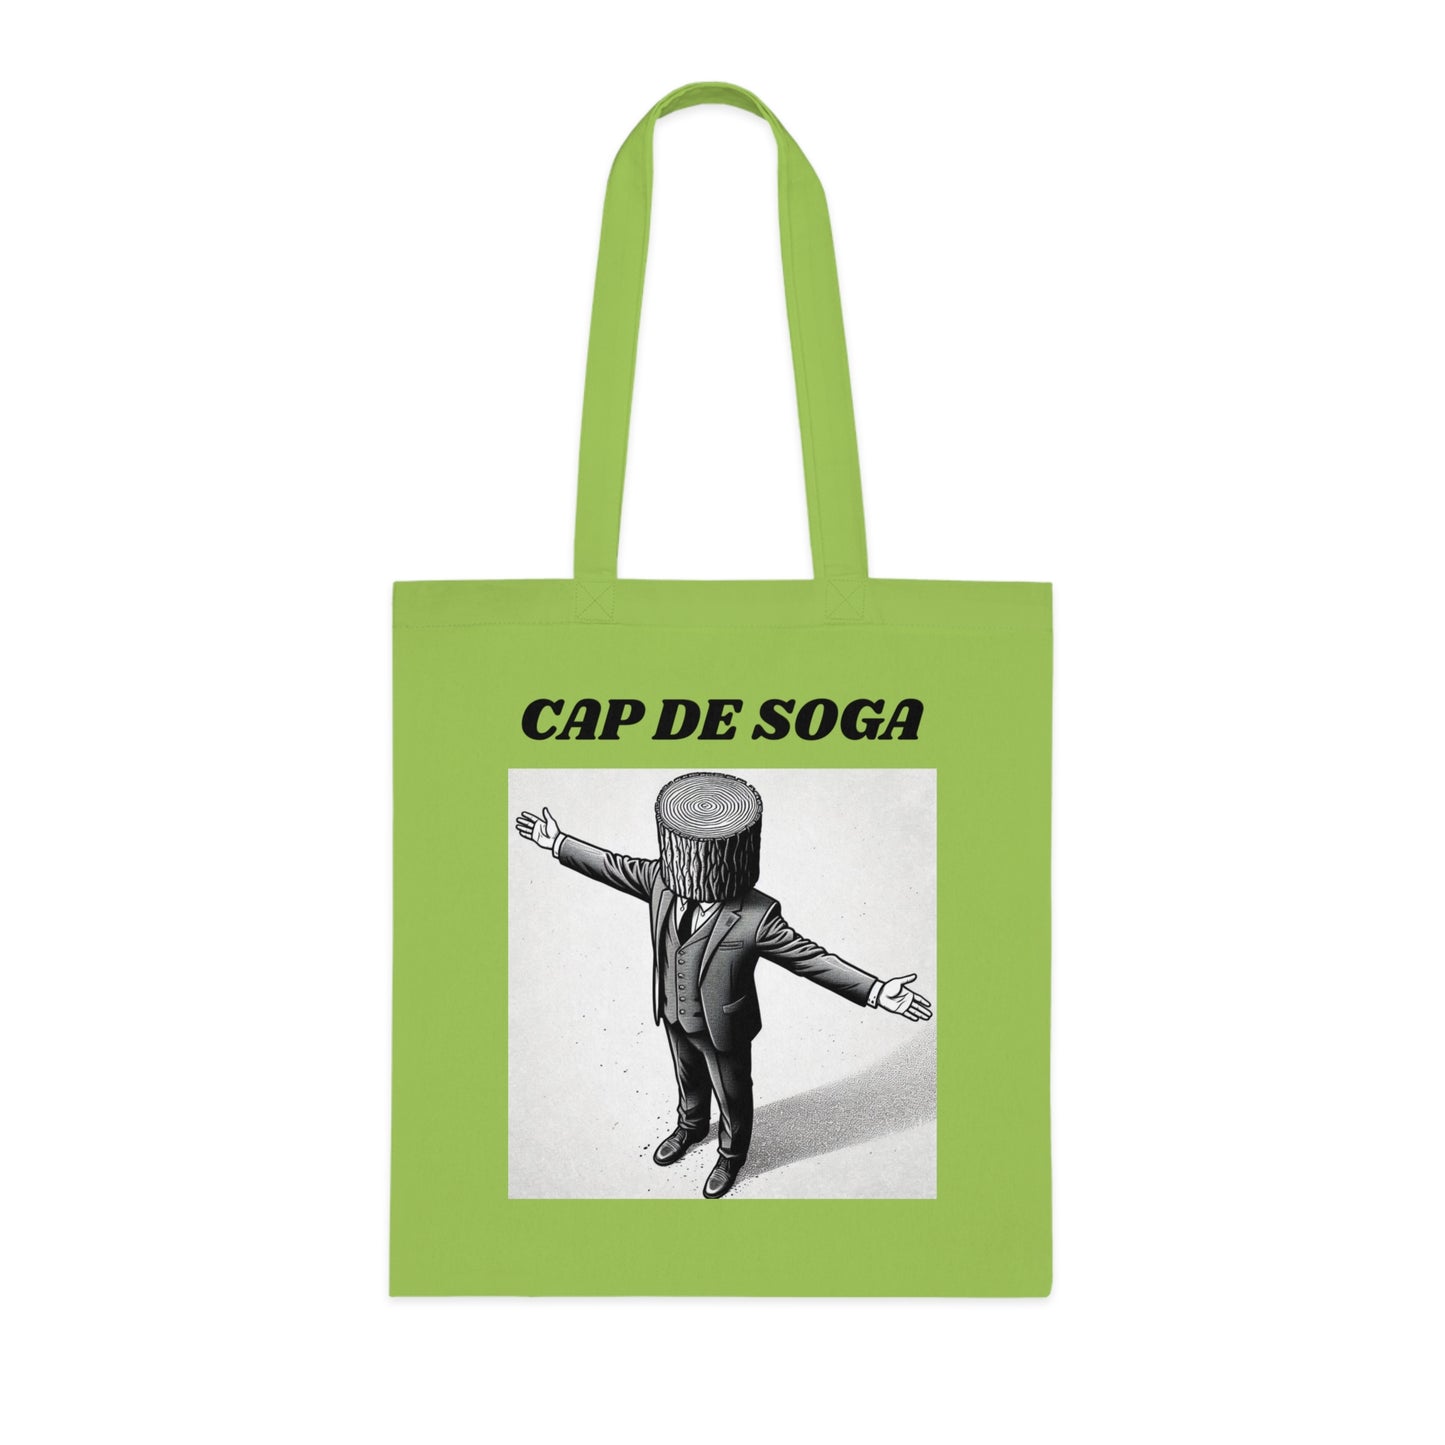 CAP DE SOGA